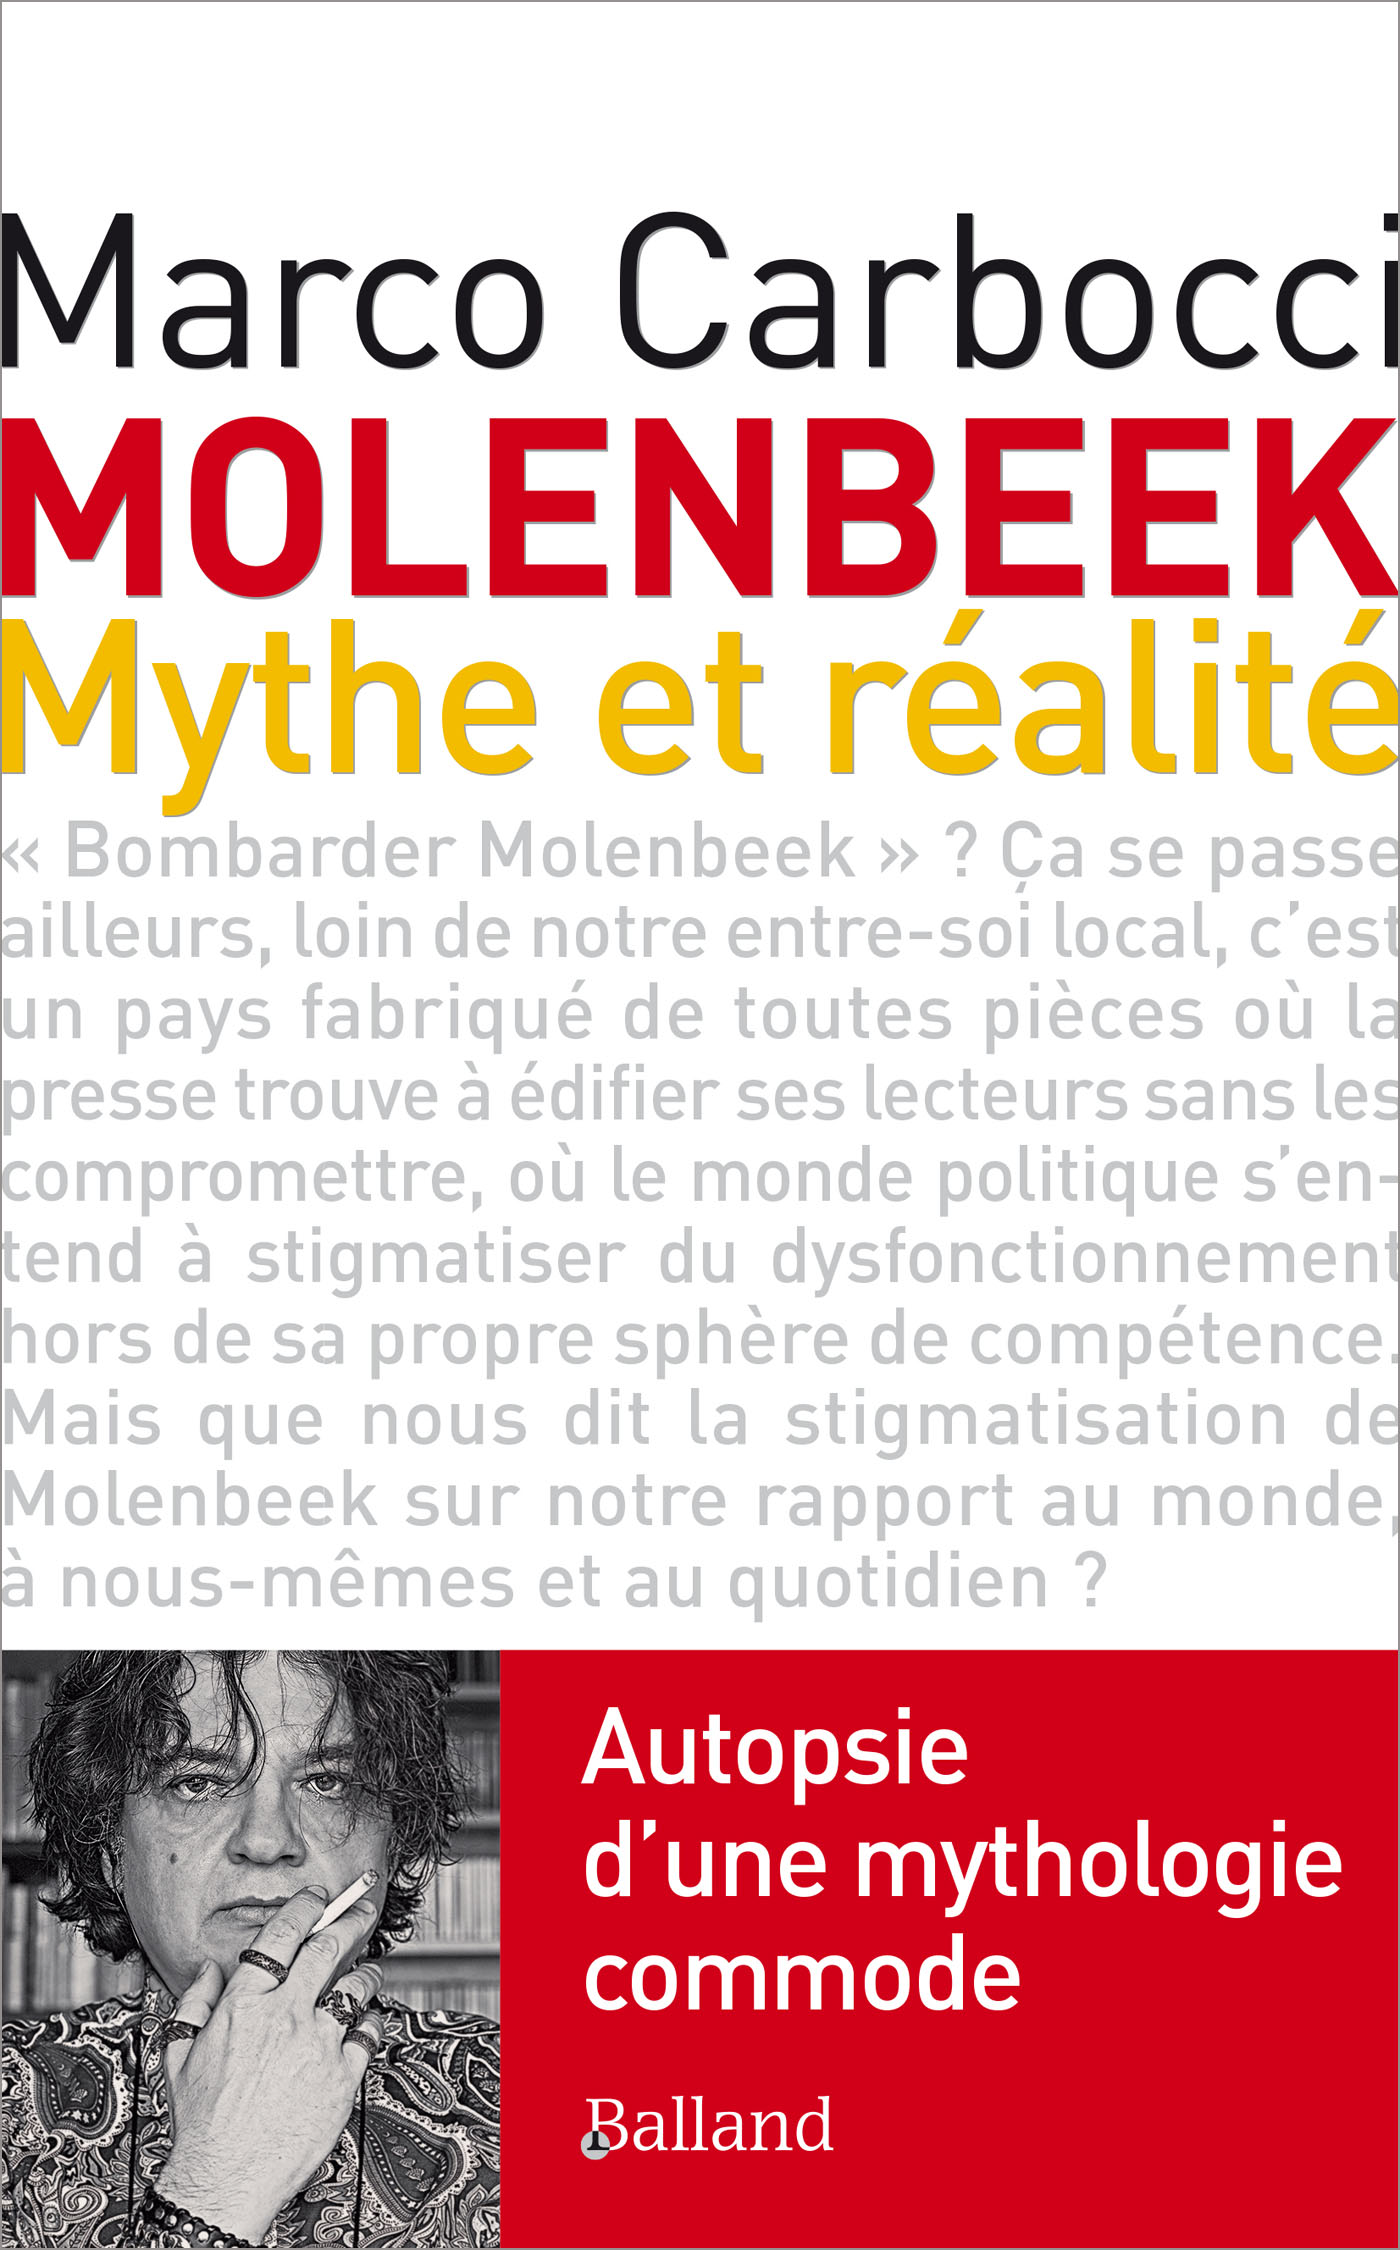 Molenbeek mythe et réalité